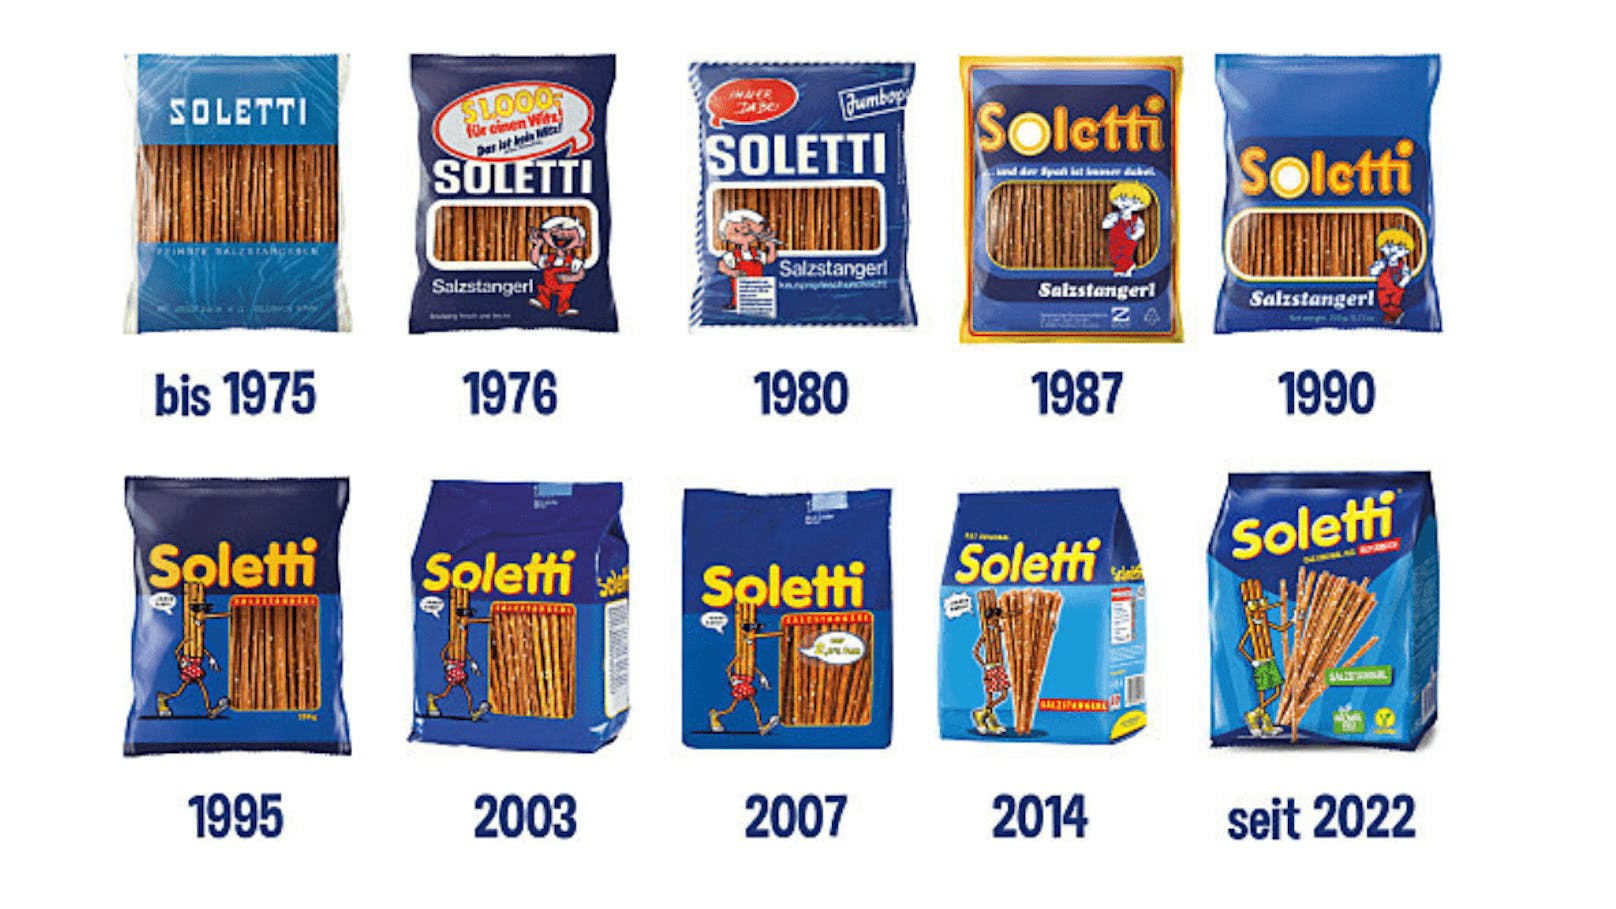 Wer erinnert sich noch an die alten Soletti-Packungen?